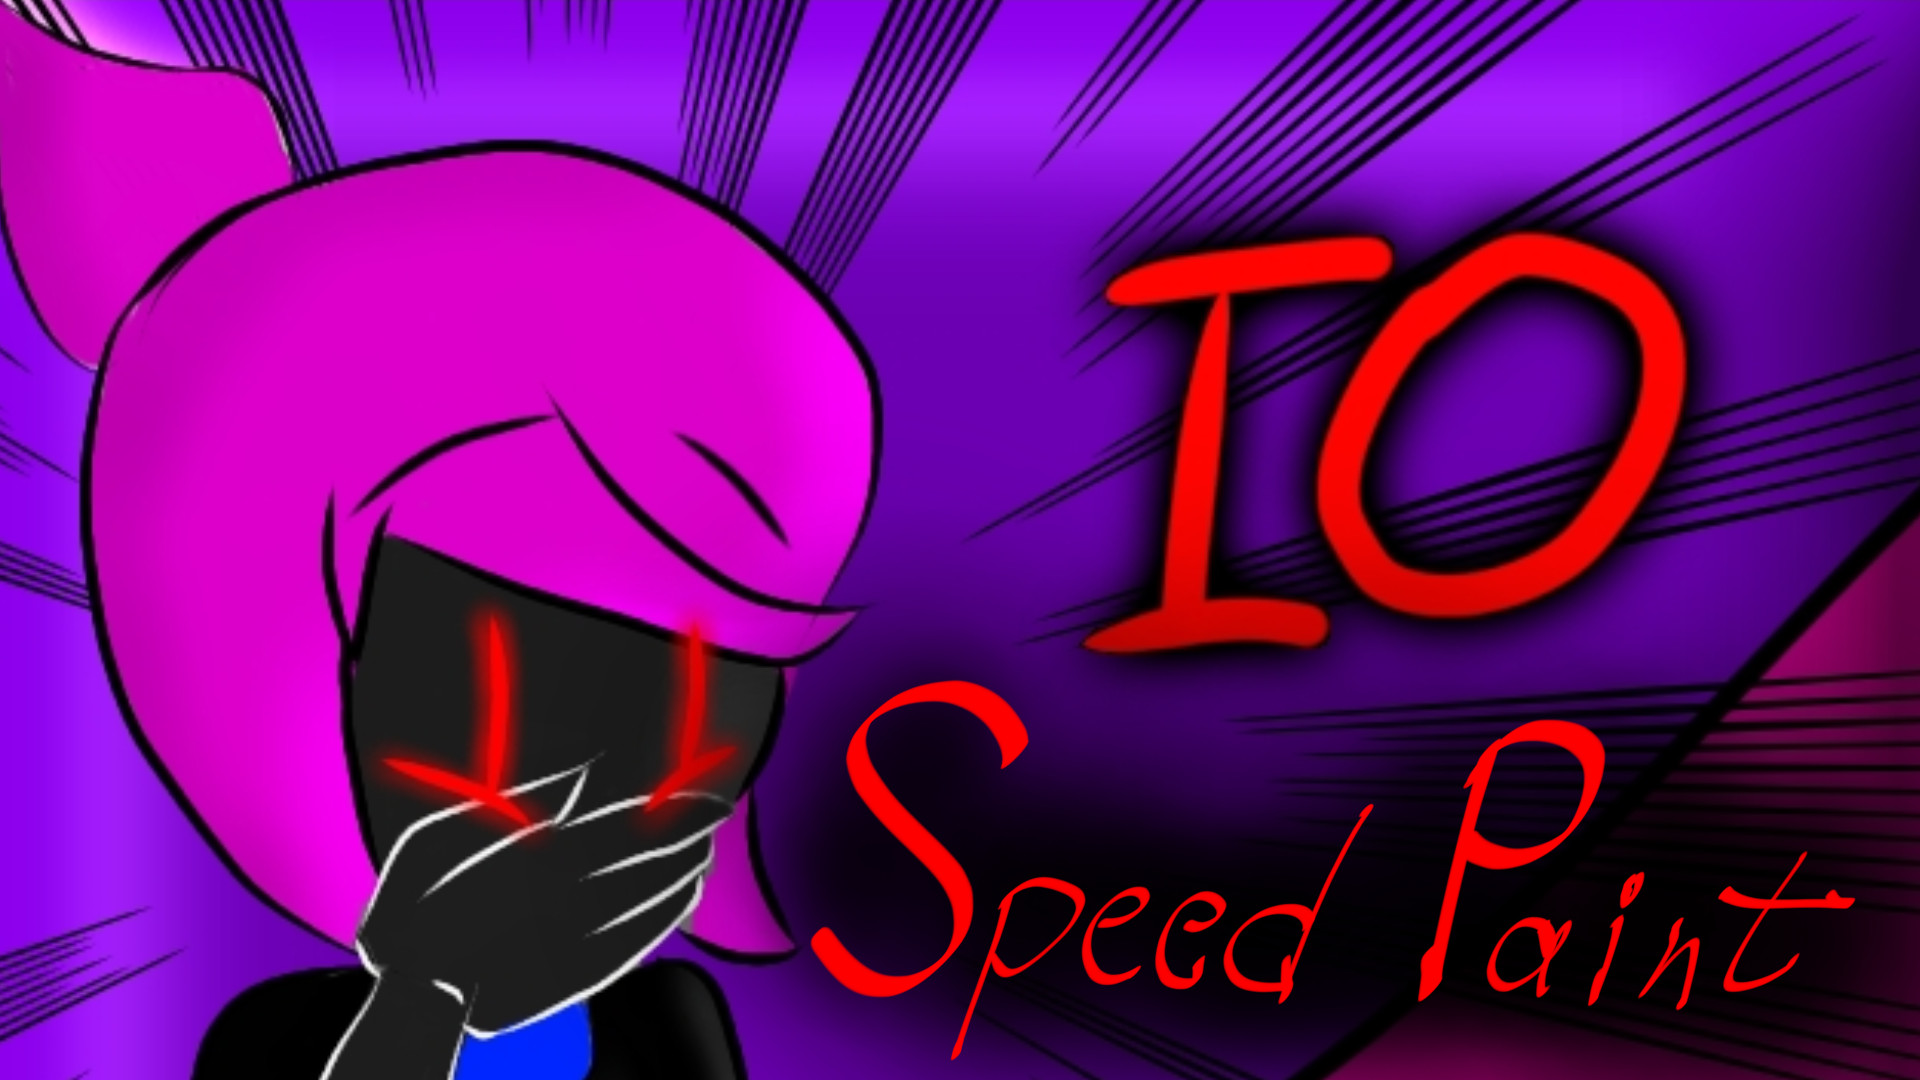 IO SpeedPaint